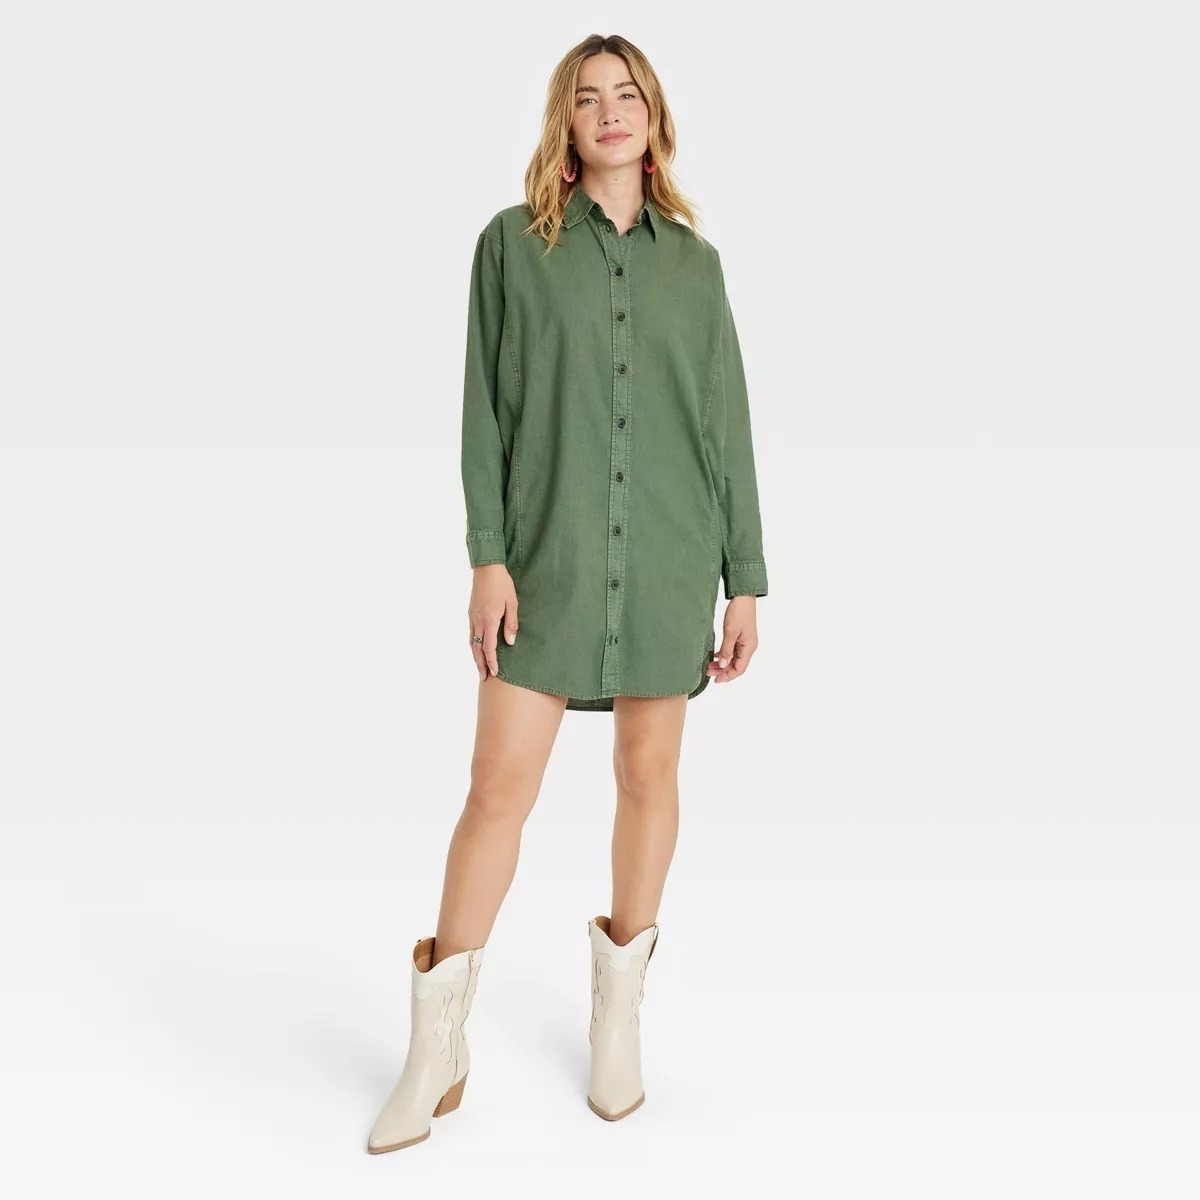 green button up t shirt dress on model